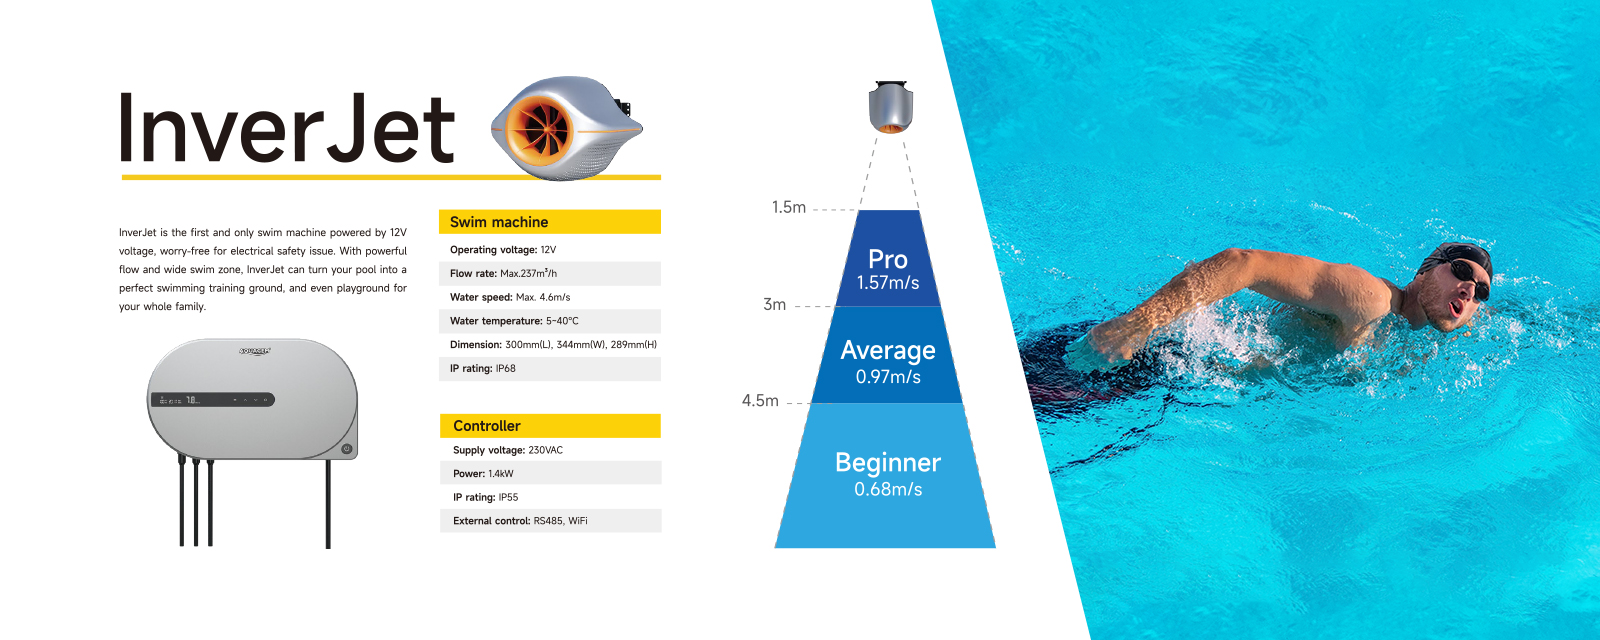 Corrente per piscina inverjet - First & Only 12VMacchina da nuoto